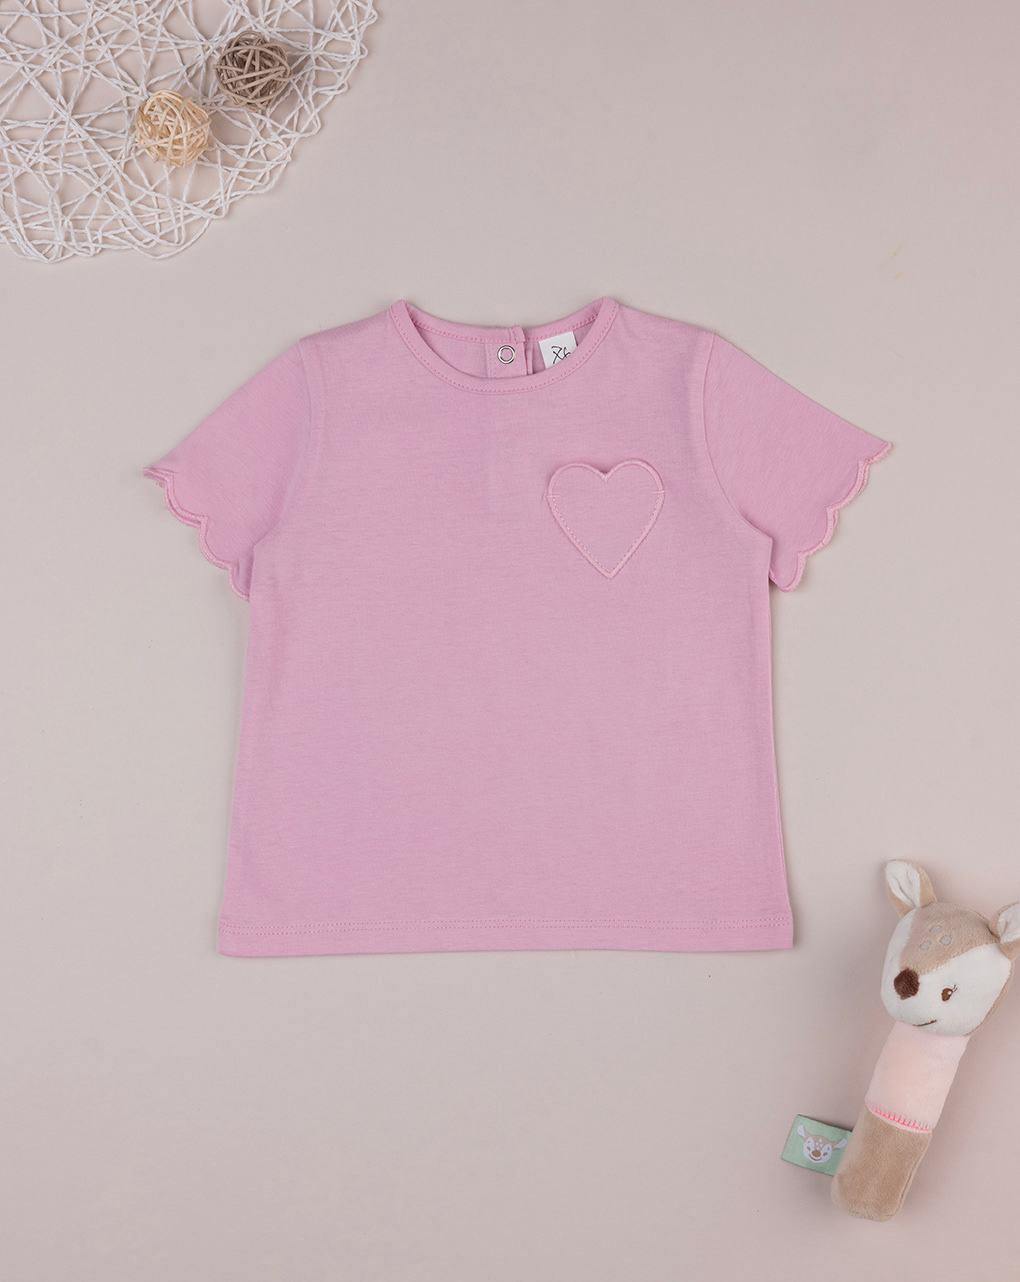 βρεφικό t-shirt ροζ με patch καρδούλα για κορίτσι